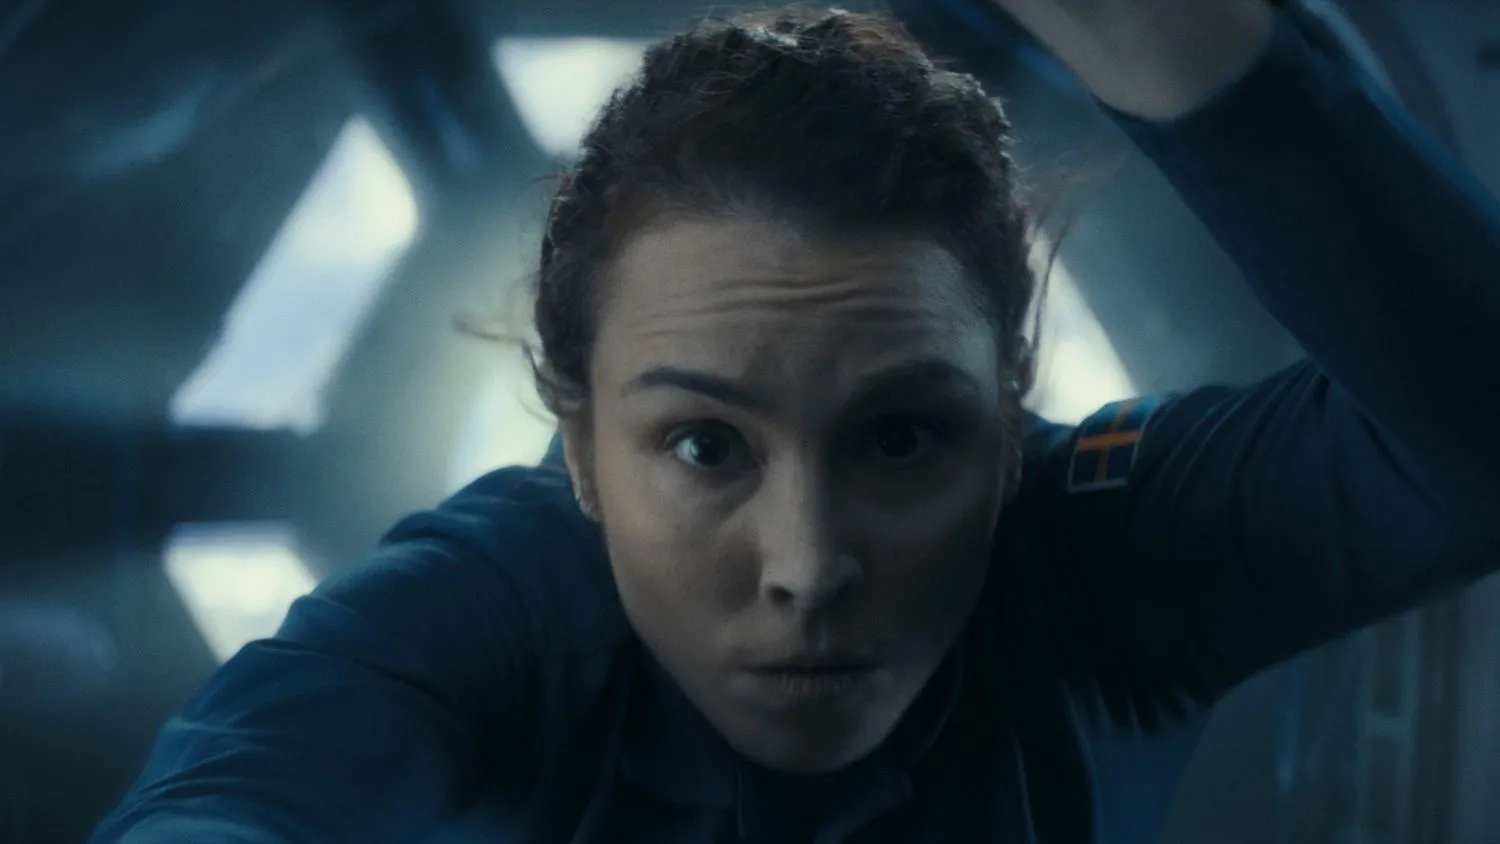 Nahaufnahme einer Frau in einem blauen Raumanzug (mit einem schwedischen Flaggenaufnäher am Arm), die in der Internationalen Raumstation schwebt. Sie blickt direkt in die Kamera.